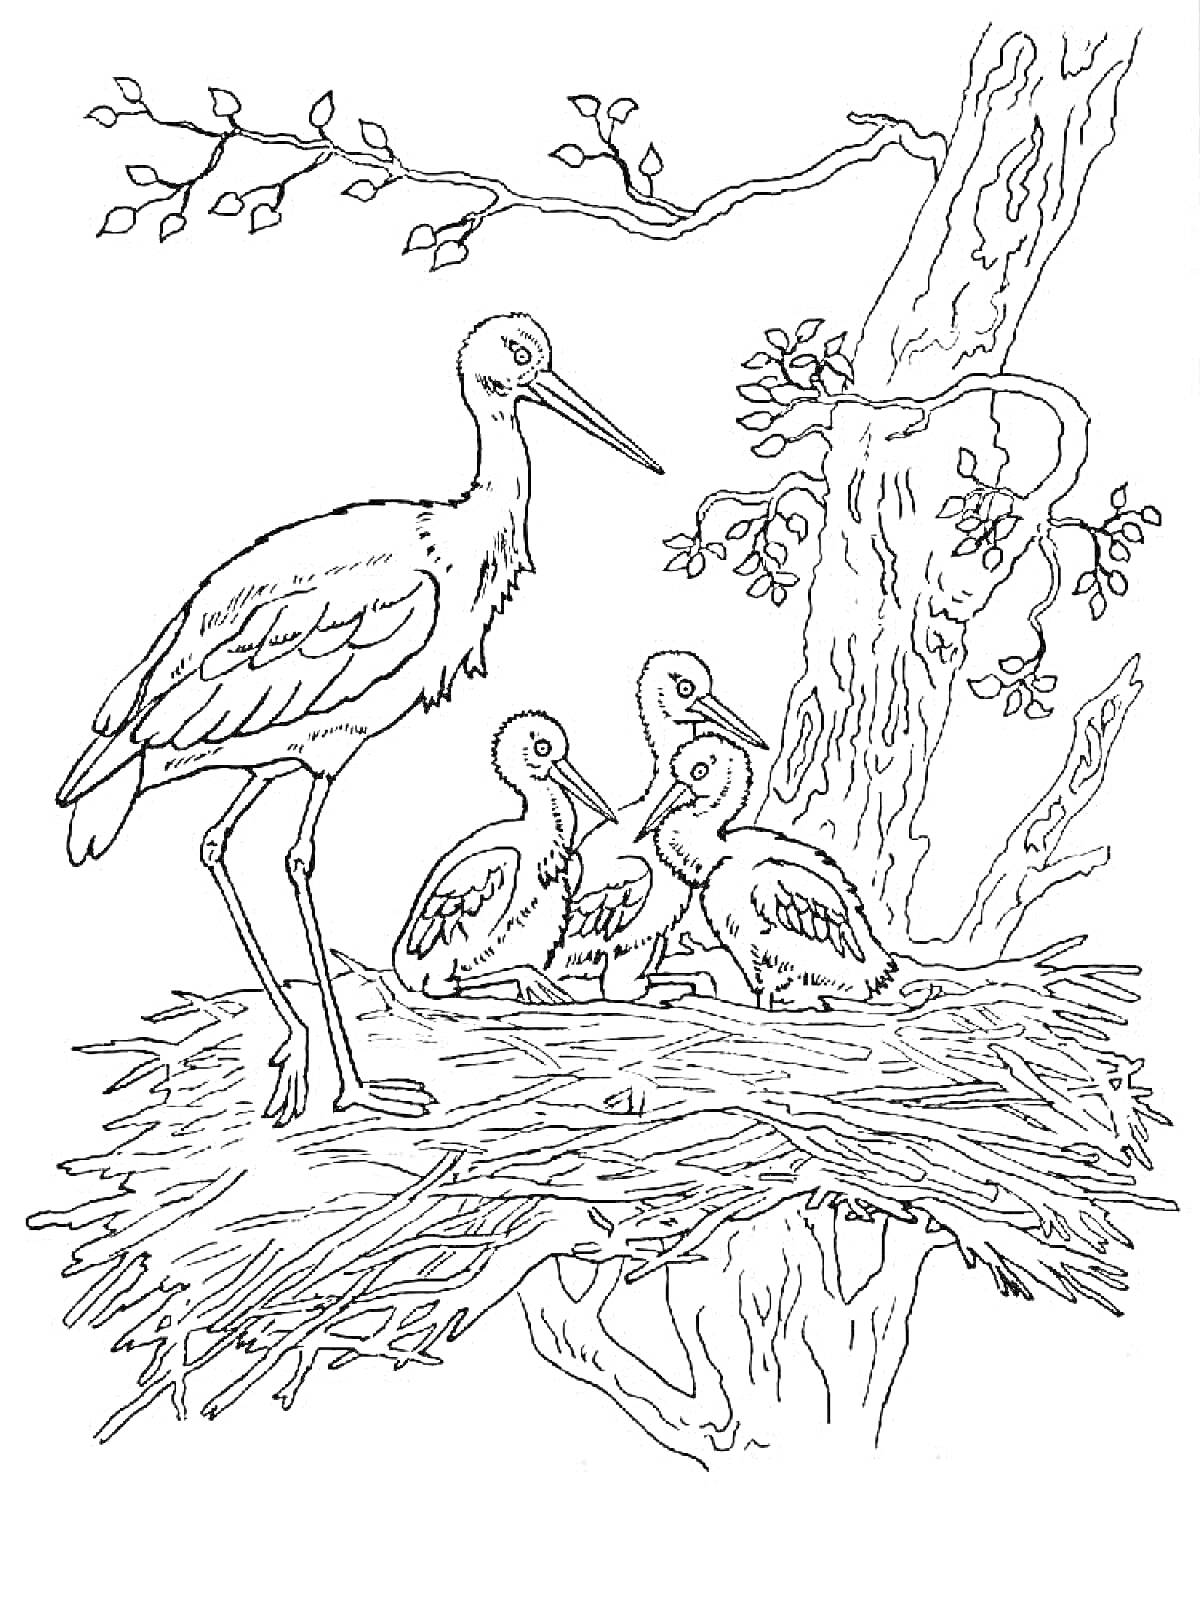 Раскраска Аист на дереве с птенцами в гнезде